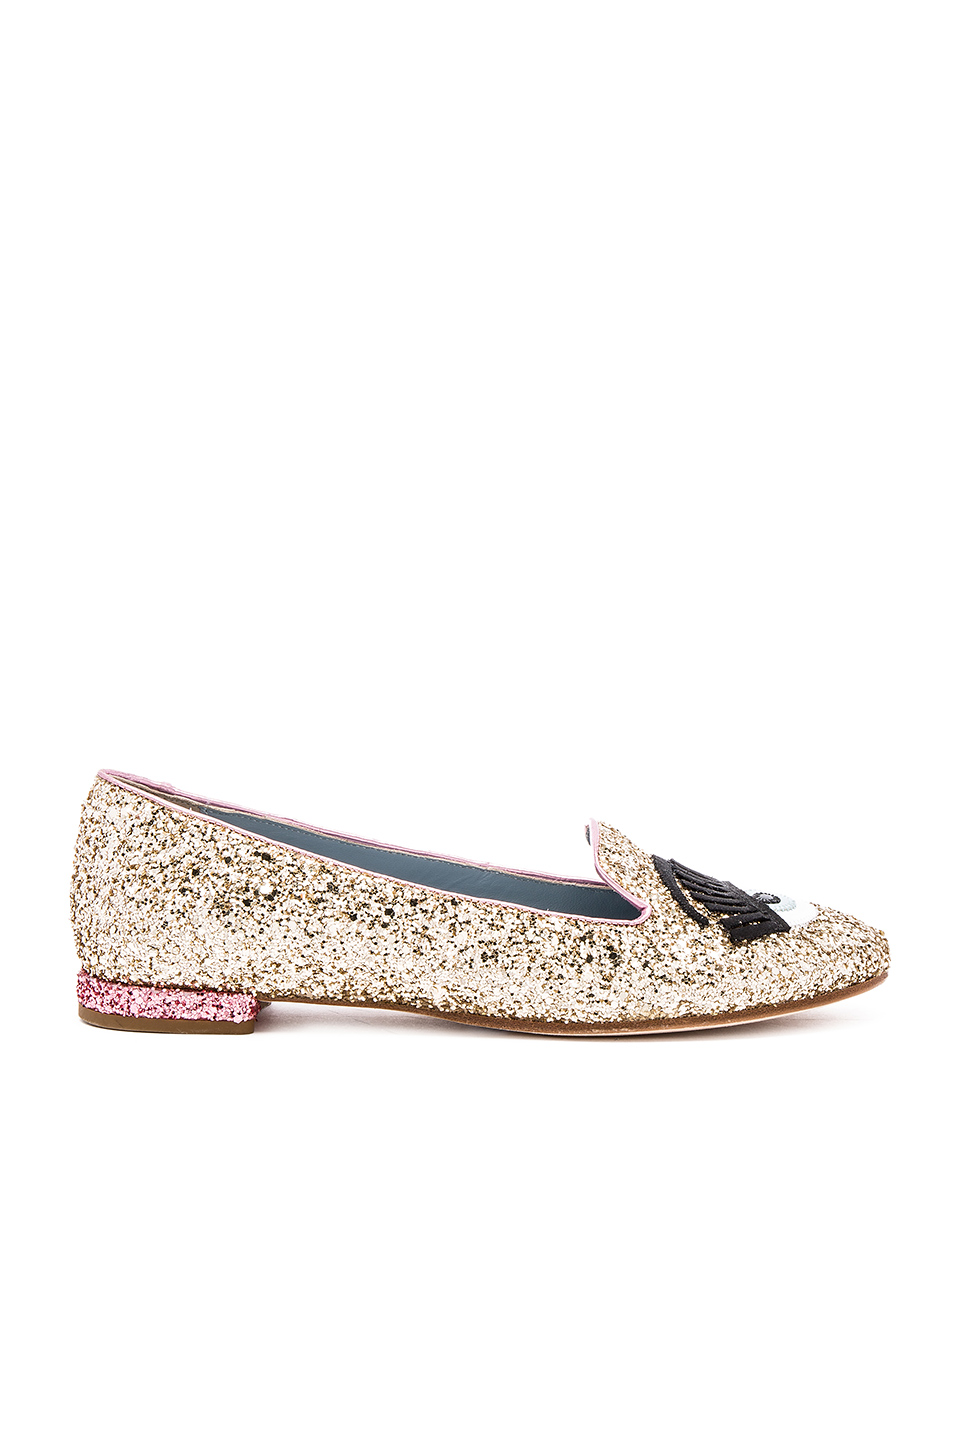 Chiara Ferragni Flirting Sleeper Loafer In Gold & Pink | ModeSens